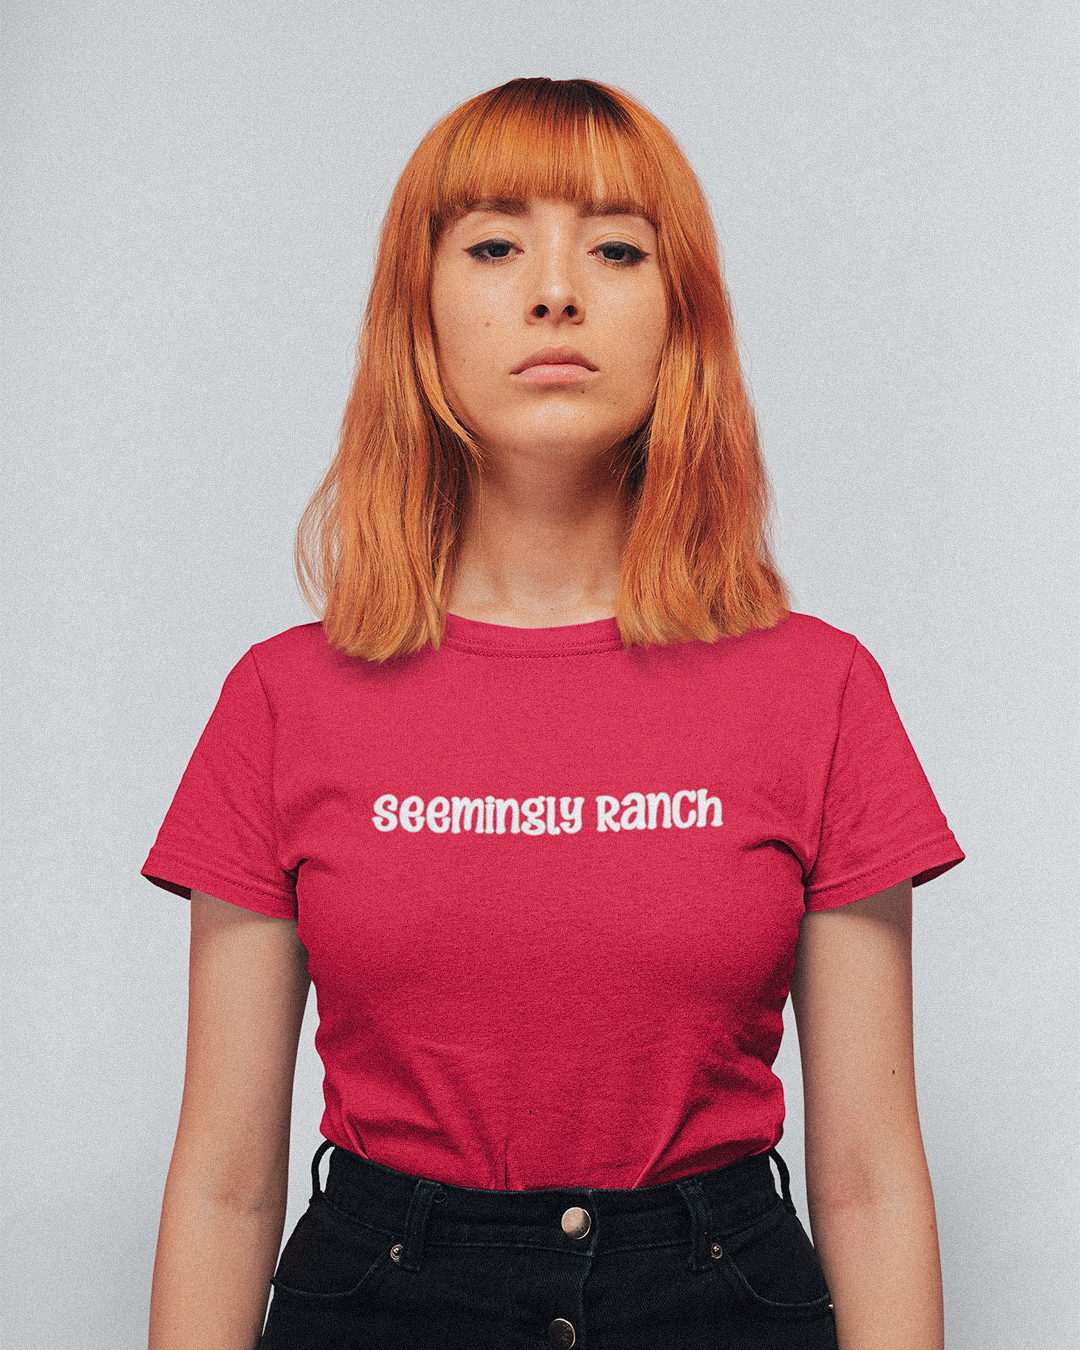 Ketchup and Seemingly Ranch T-Shirt - Taylor Swift Inspired T-Shirt - Taylor Swift Meme Ranch T-Shirt - Taylor Swift Inspired T-Shirt